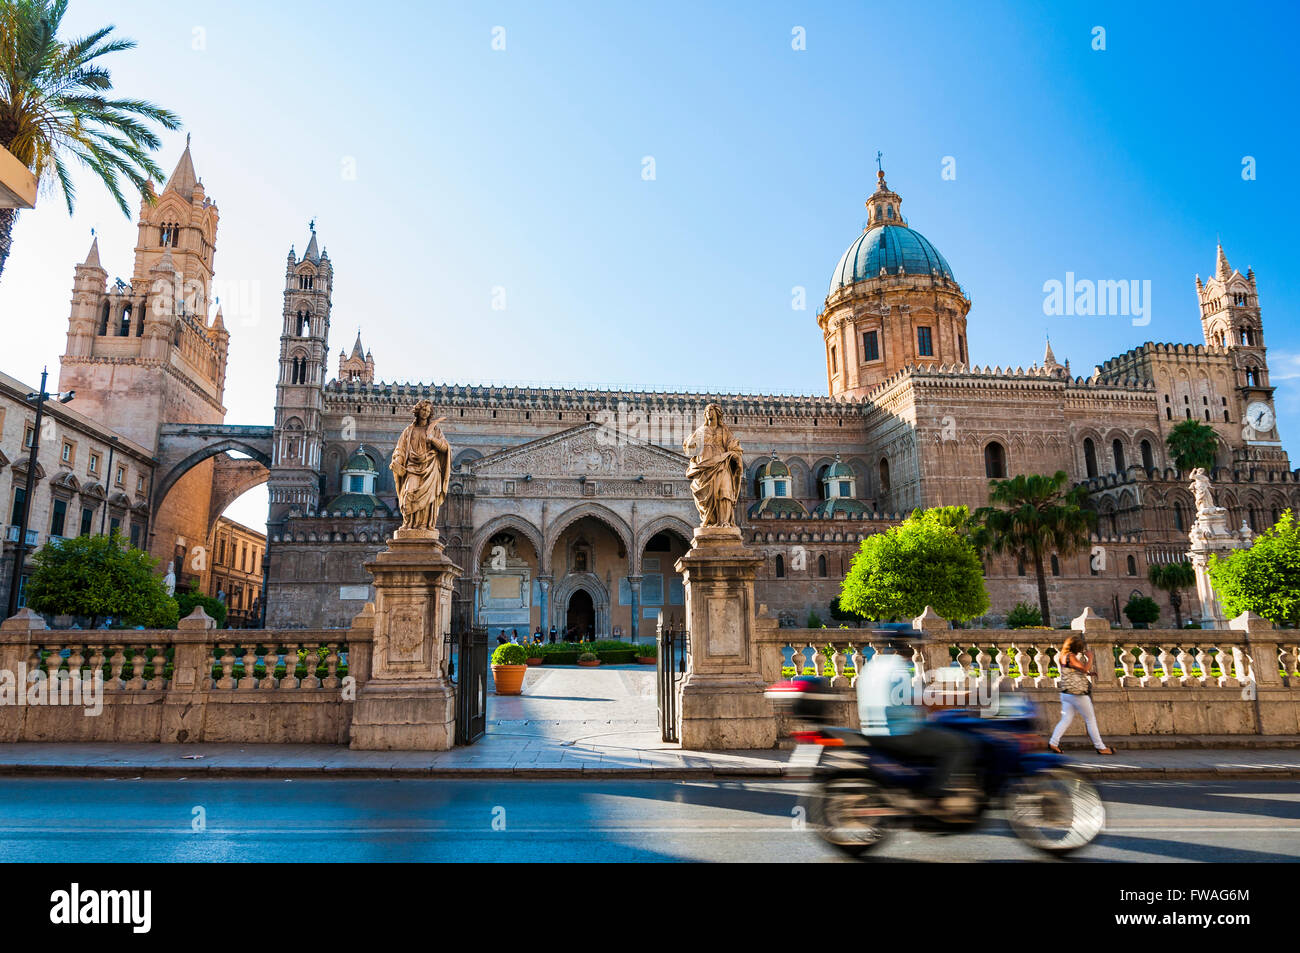 Kathedrale von Palermo ist die Kathedrale des römisch-katholischen Erzbistums Palermo, befindet sich in Palermo, Sizilien, Italien. Stockfoto